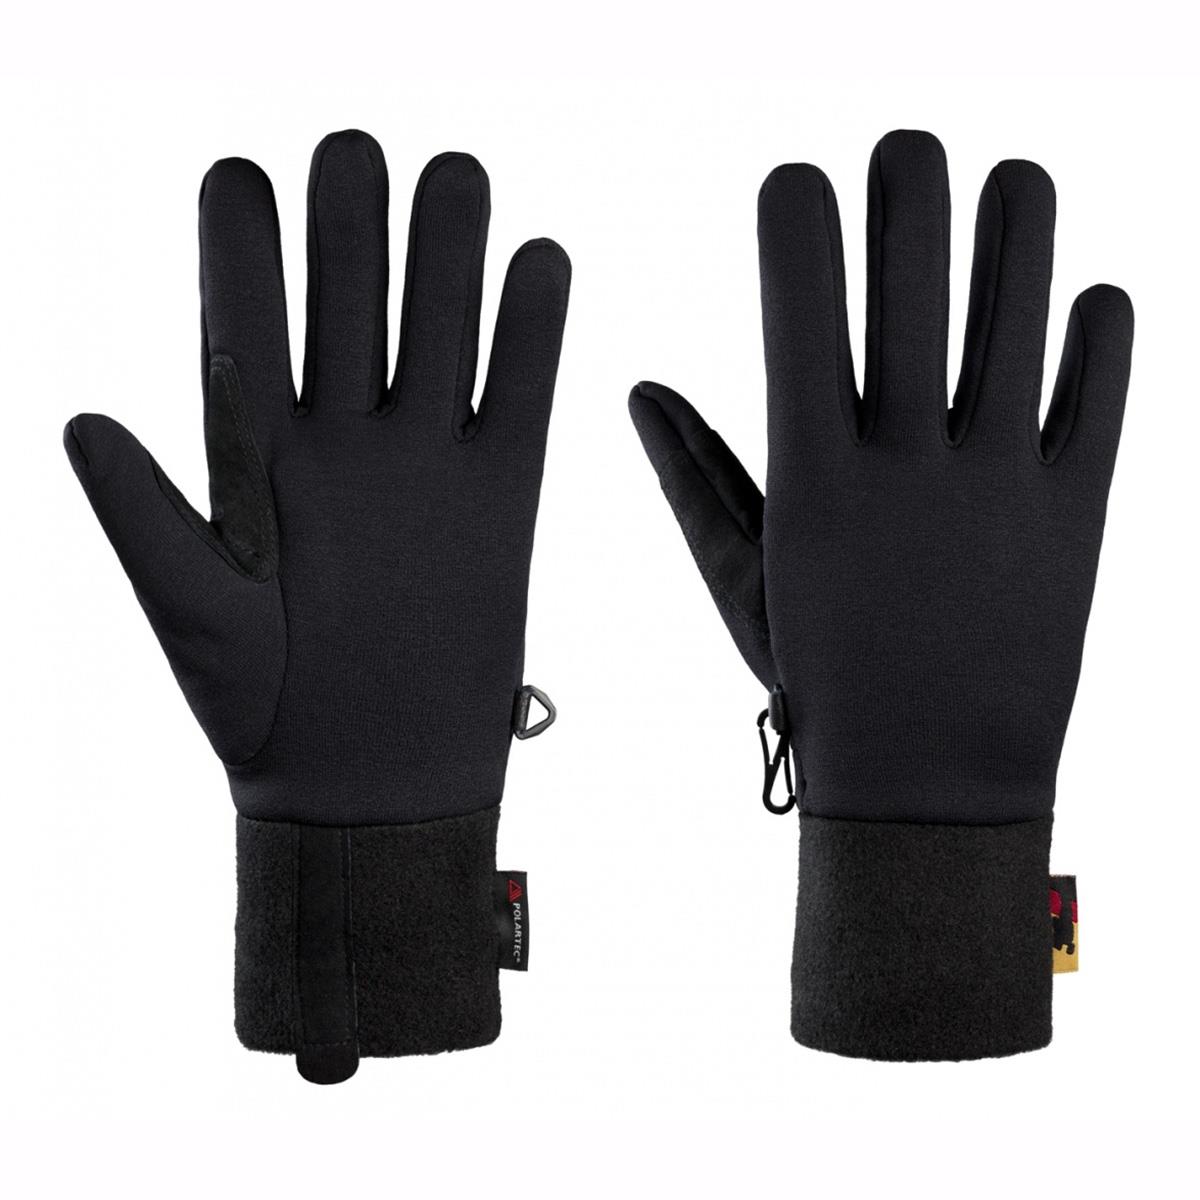 Перчатки STRETCH GLOVE V2 (4022A) БАСК перчатки vileda для деликатных работ s